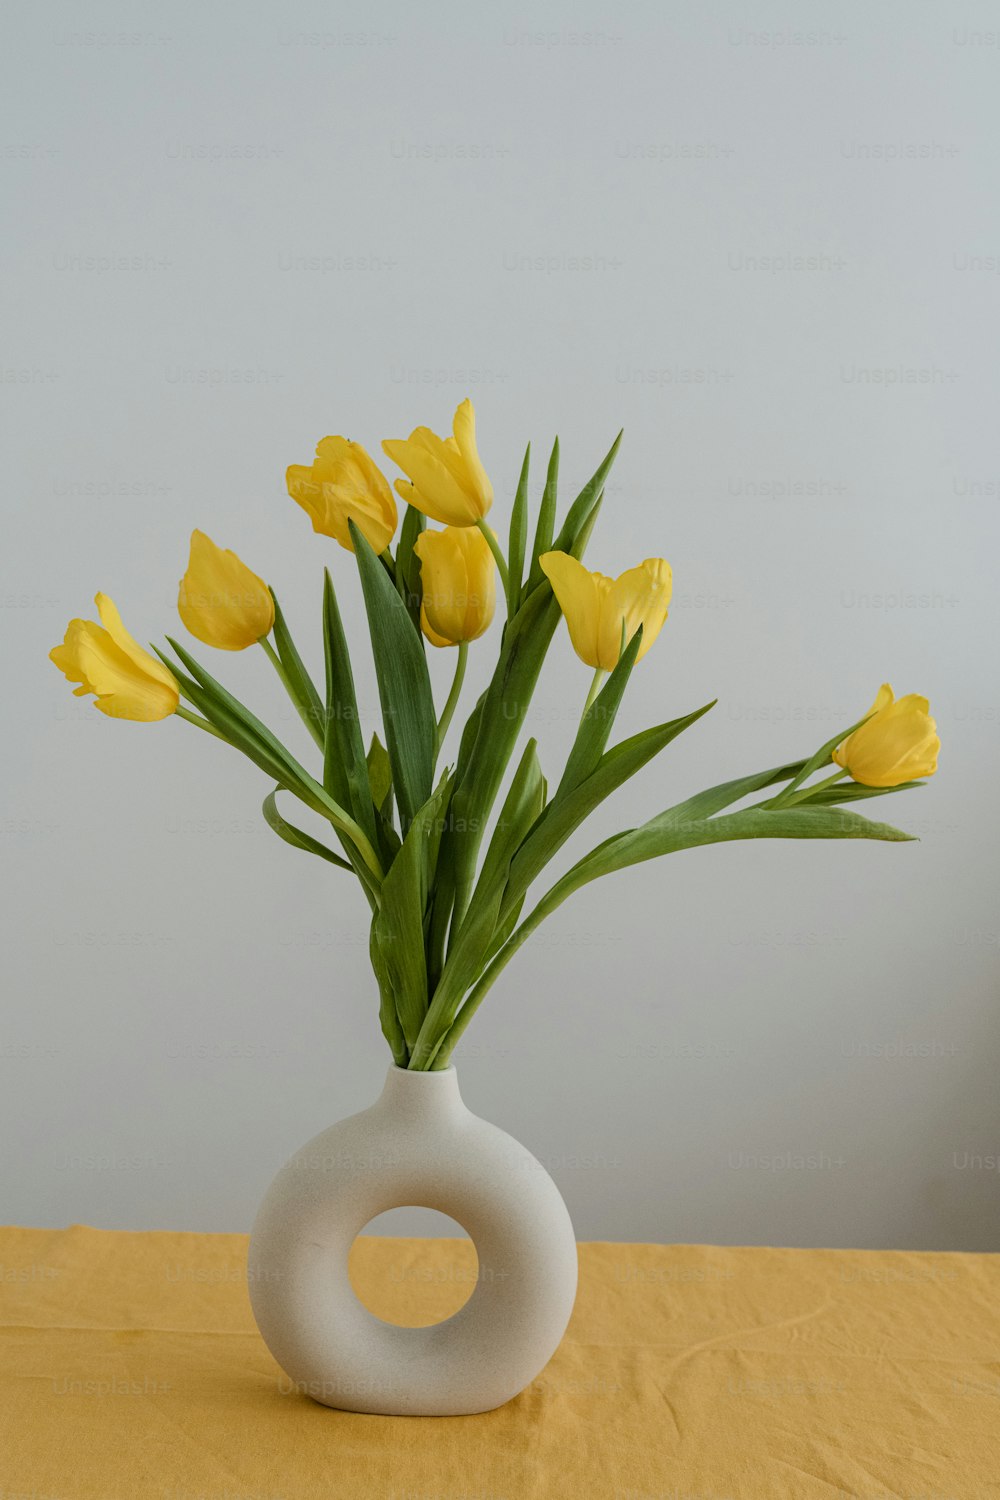 테이블 위에 노란 꽃으로 가득 찬 꽃병